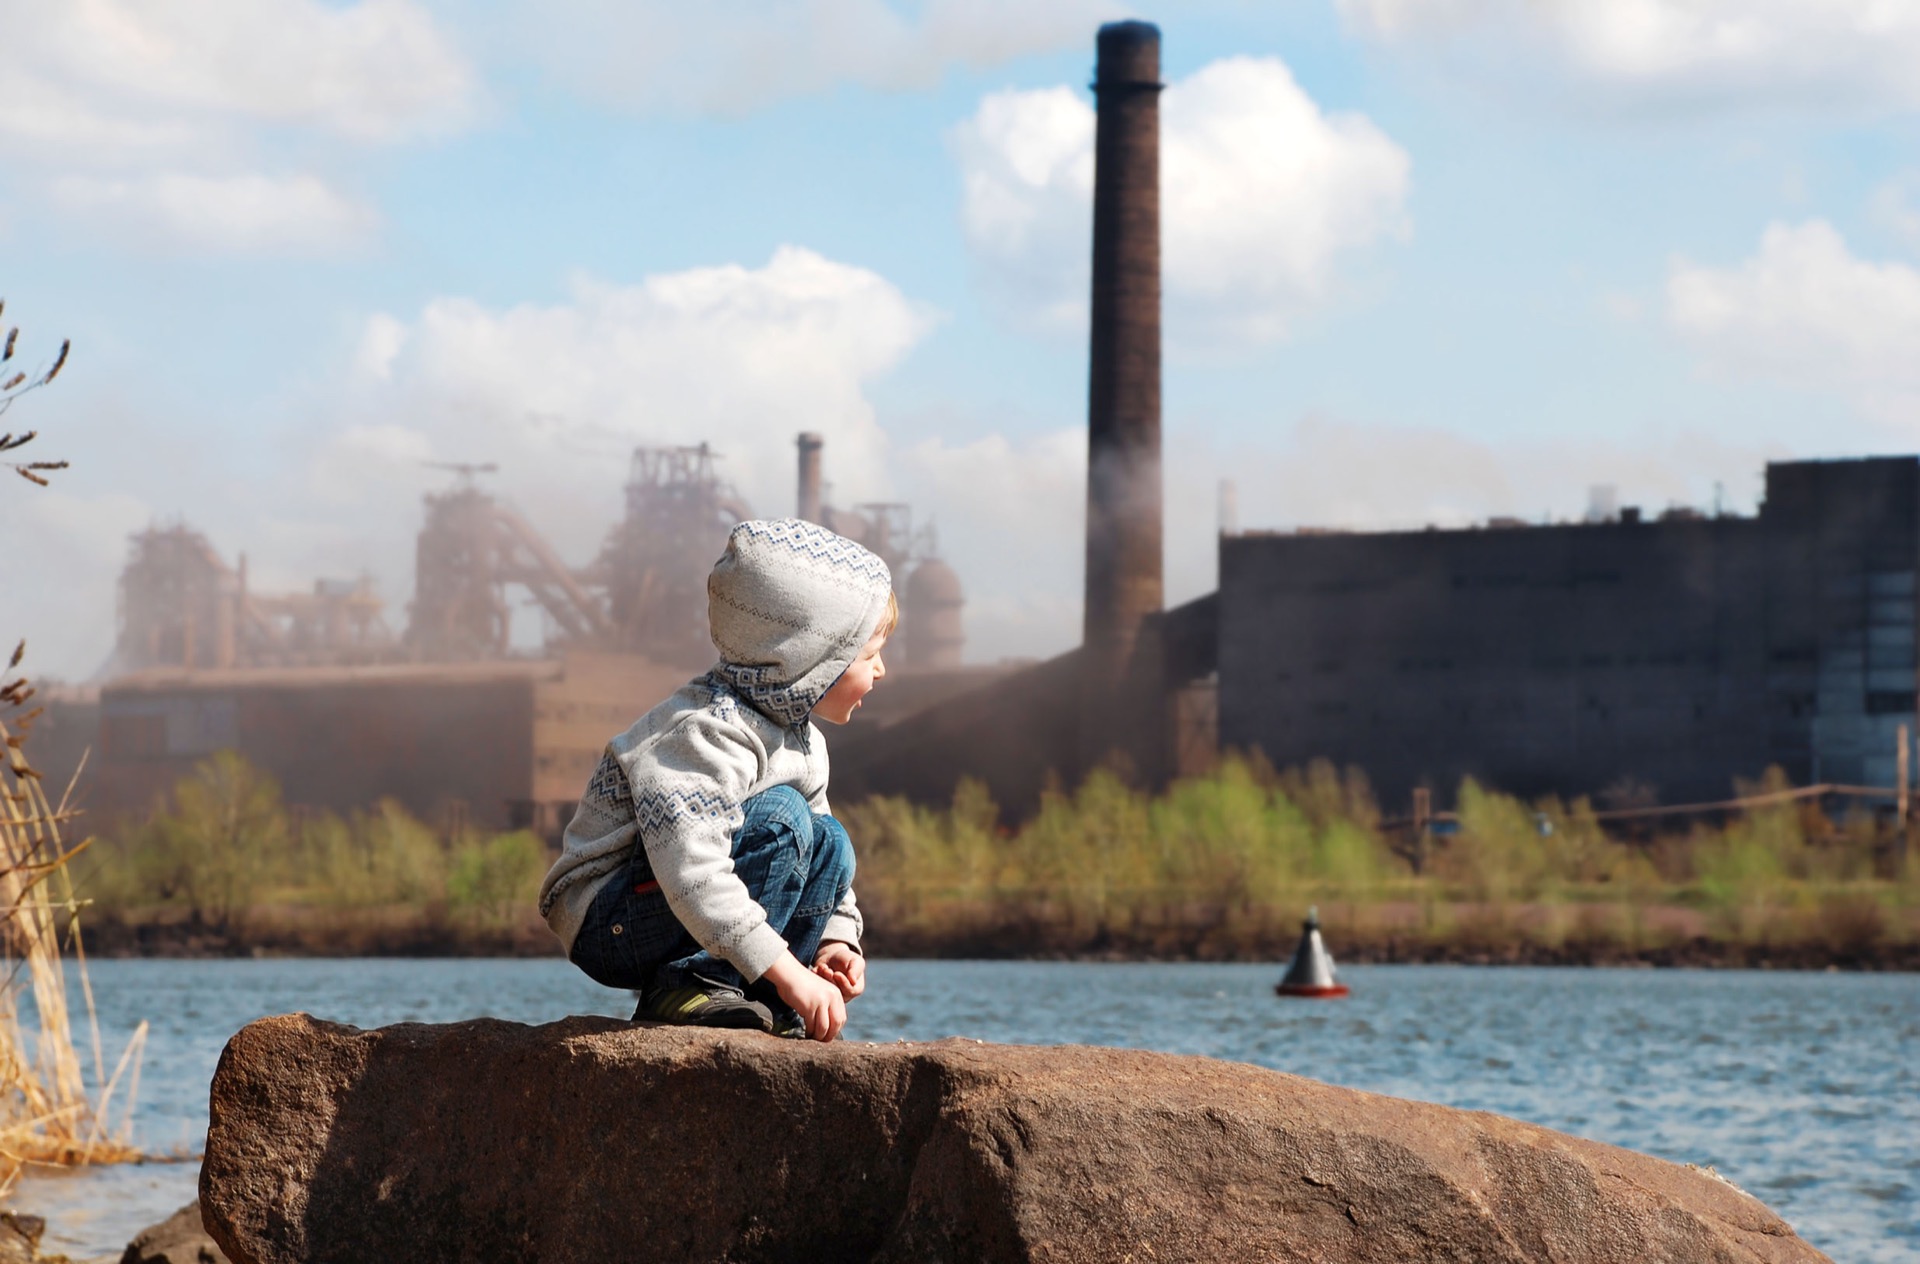 La pollution atmosphérique tue. L'OMS&nbsp;revoit ses critères d'évaluation des polluants à la hausse afin d'éviter des millions de morts. © Soloviova Liudmyla, Adobe Stock